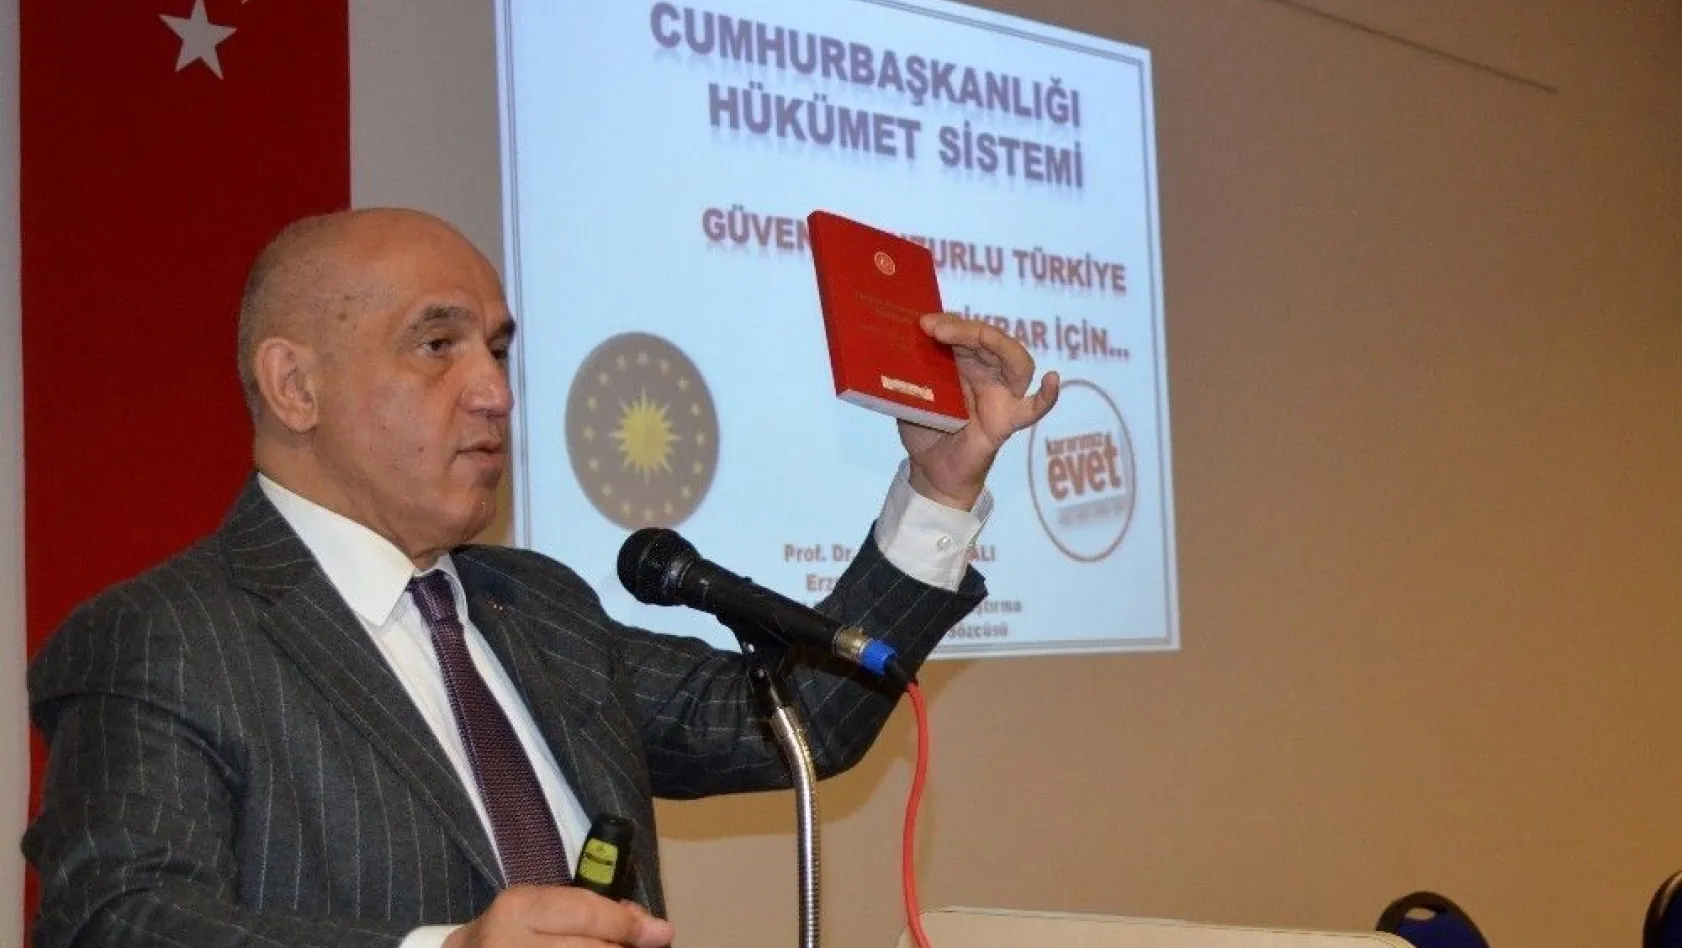 Ilıcalı referandum sürecinde Erzurum'u adım adım gezip yeni anayasayı anlattı
